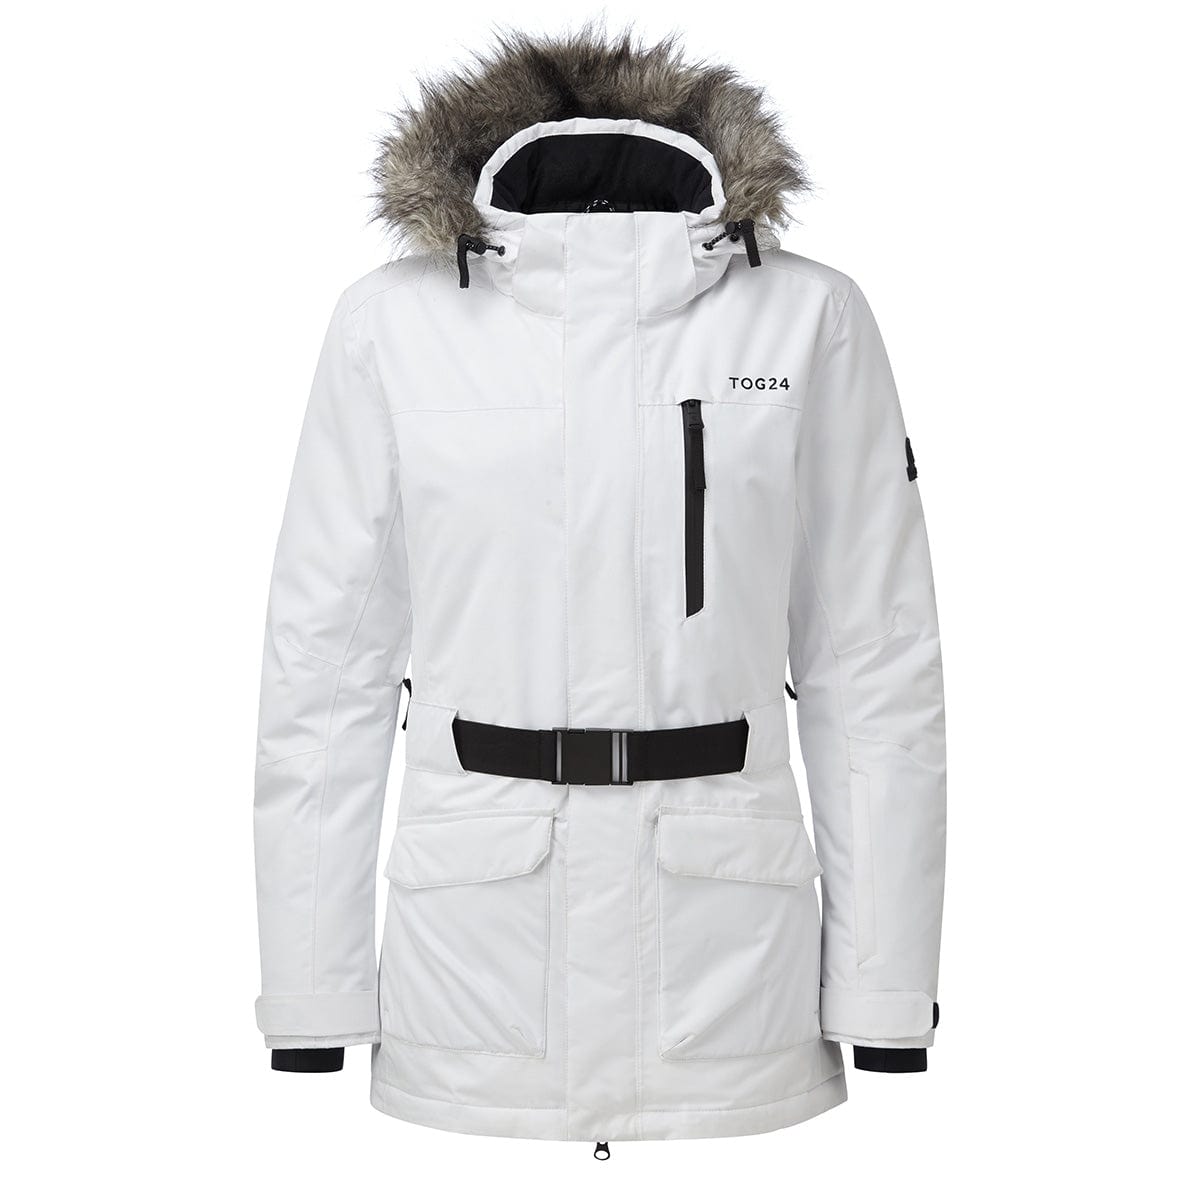 Aria Womens Waterproof Insulated Ski Jacket - White image 4